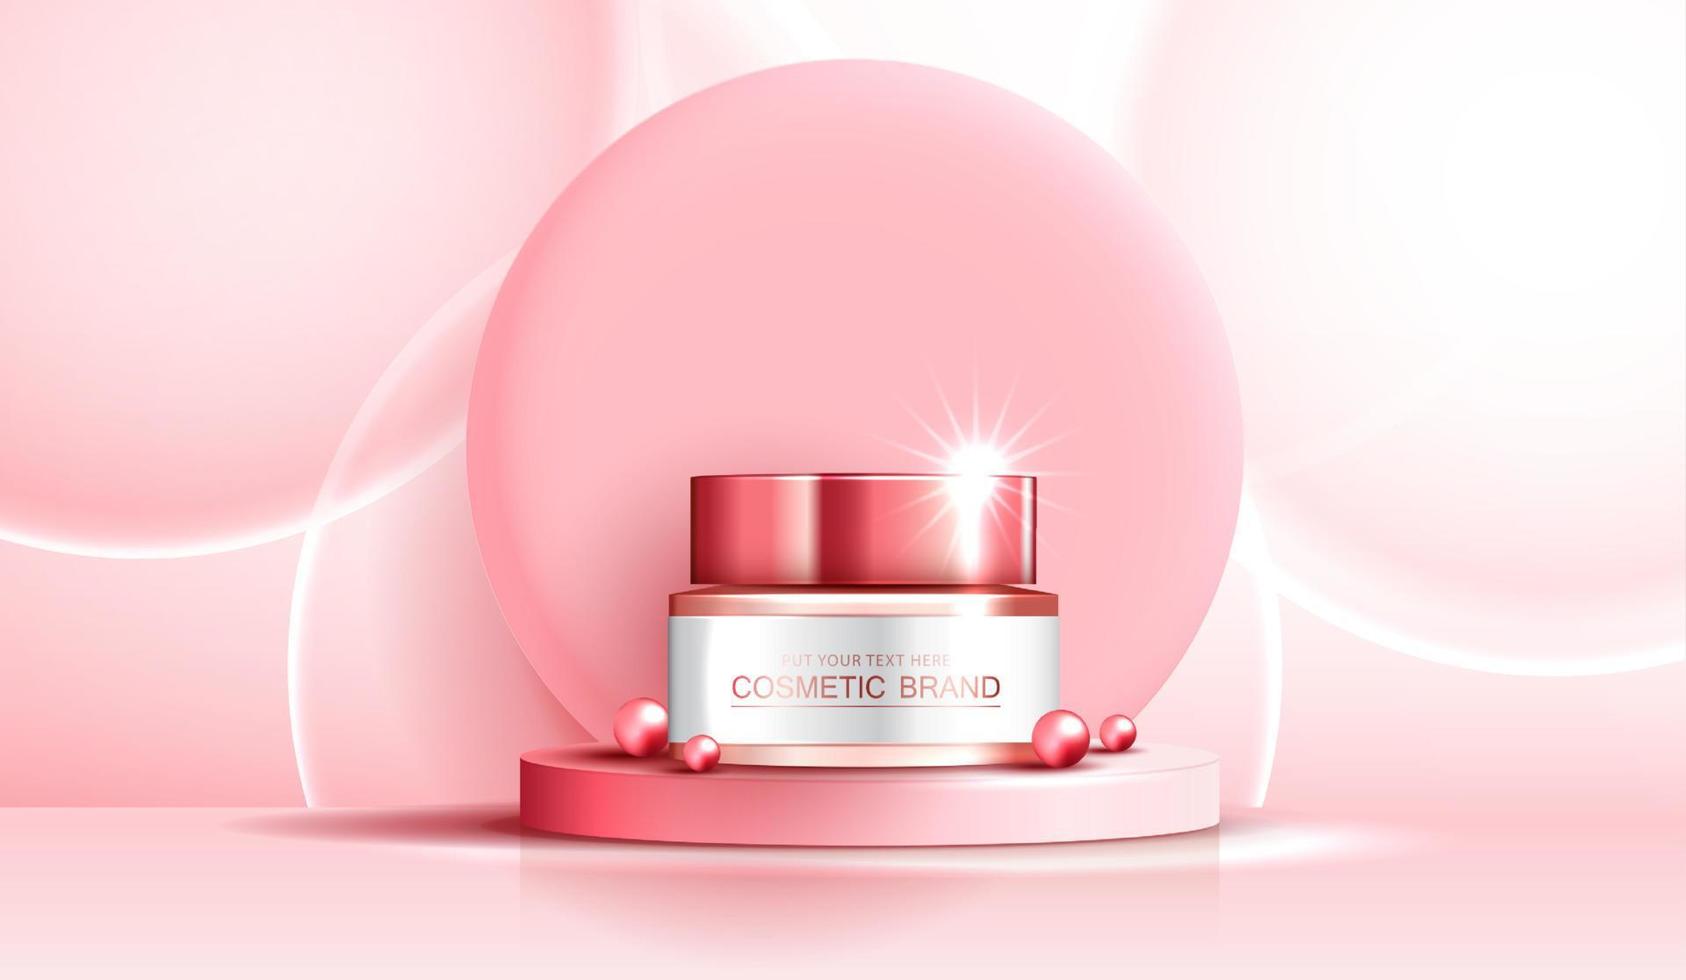 kosmetika spa eller hudvårdsprodukter annonser med flaska, bannerannons för skönhetsprodukter, rosa pärla och bubbla på rosa bakgrund glittrande ljuseffekt. vektor design